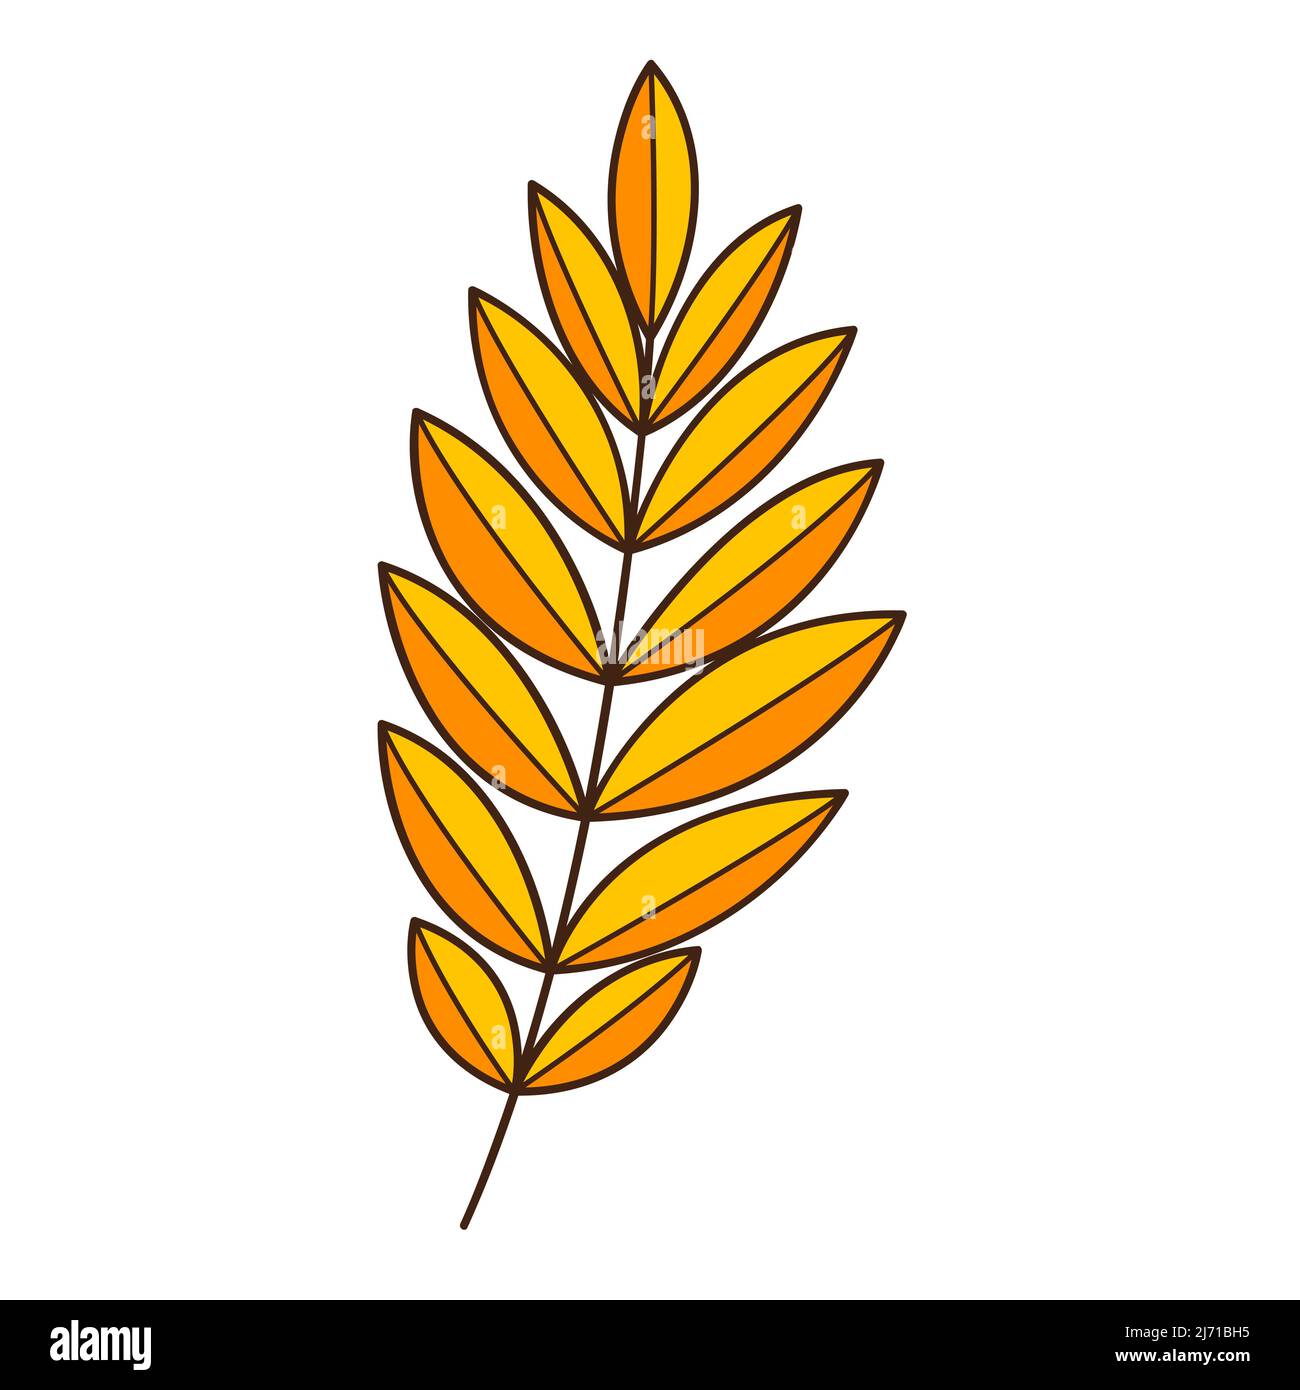 Gelb-orangefarbener abstrakter Zweig mit Blättern. Ein Grashalm. Herbstzeit. Botanisches, pflanzliches Designelement mit Umriss. Doodle, handgezeichnet. Flaches Design. Stock Vektor